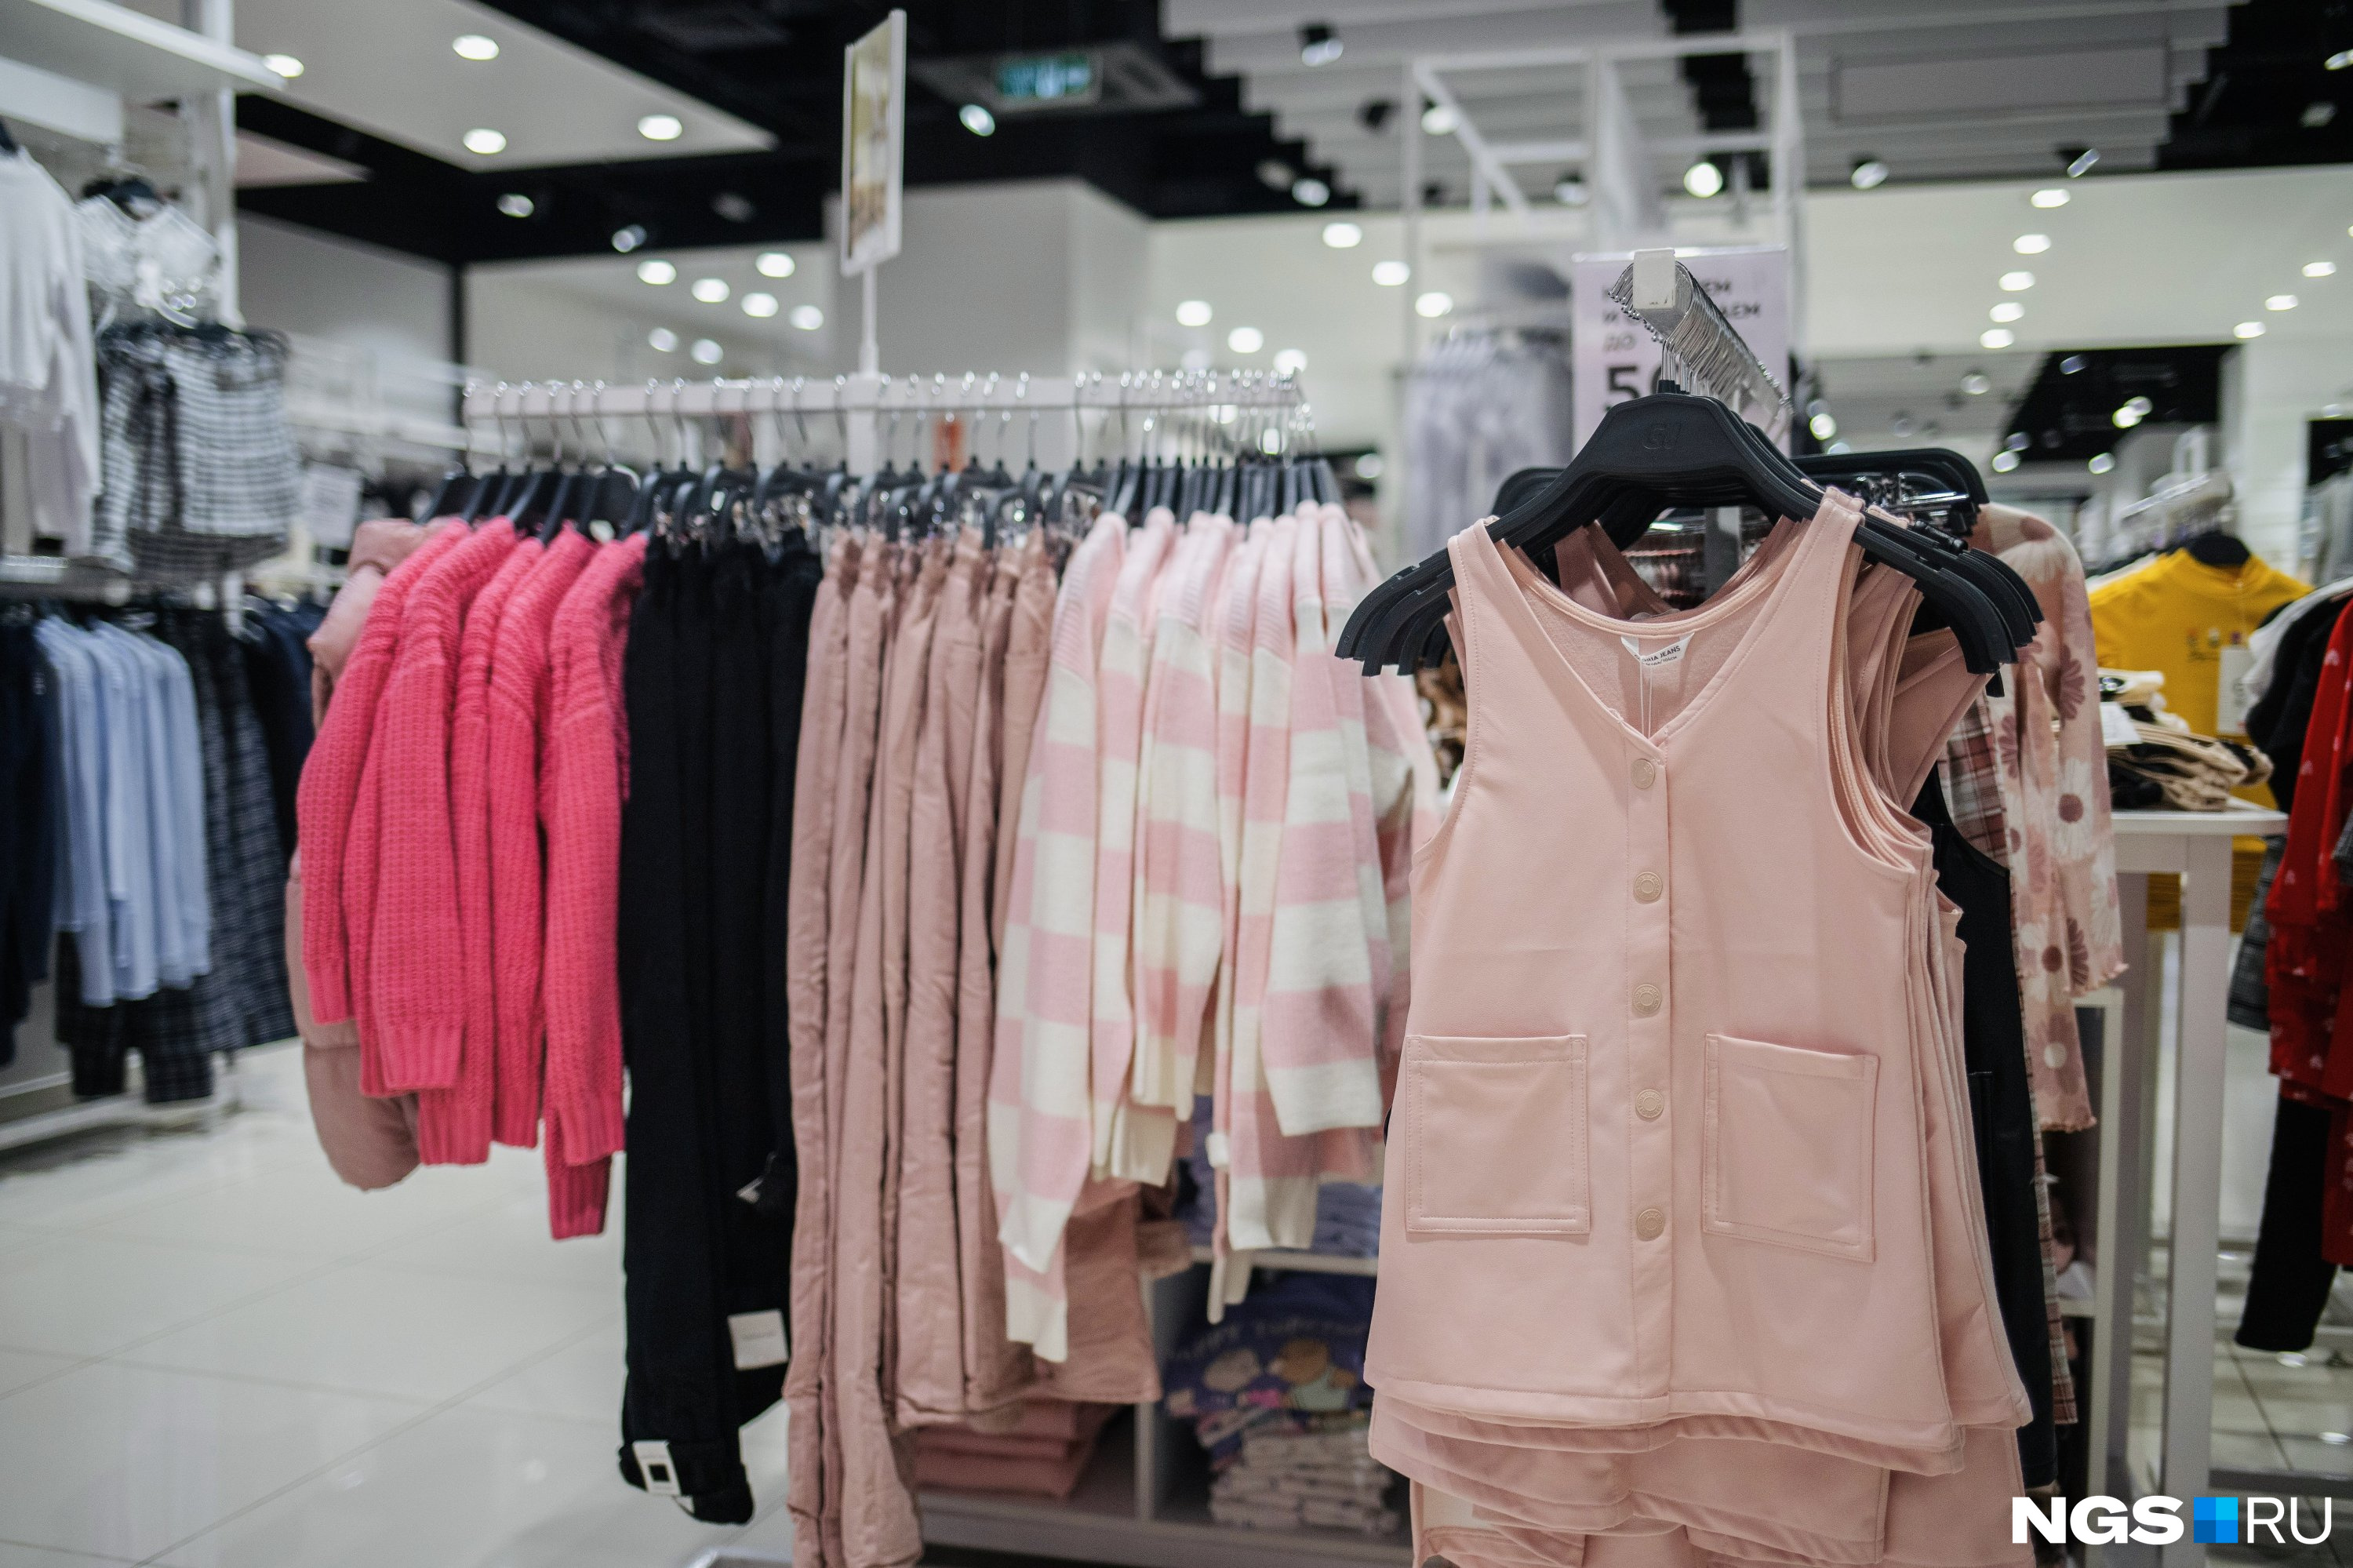 Розовый свитер стоит 1399 рублей